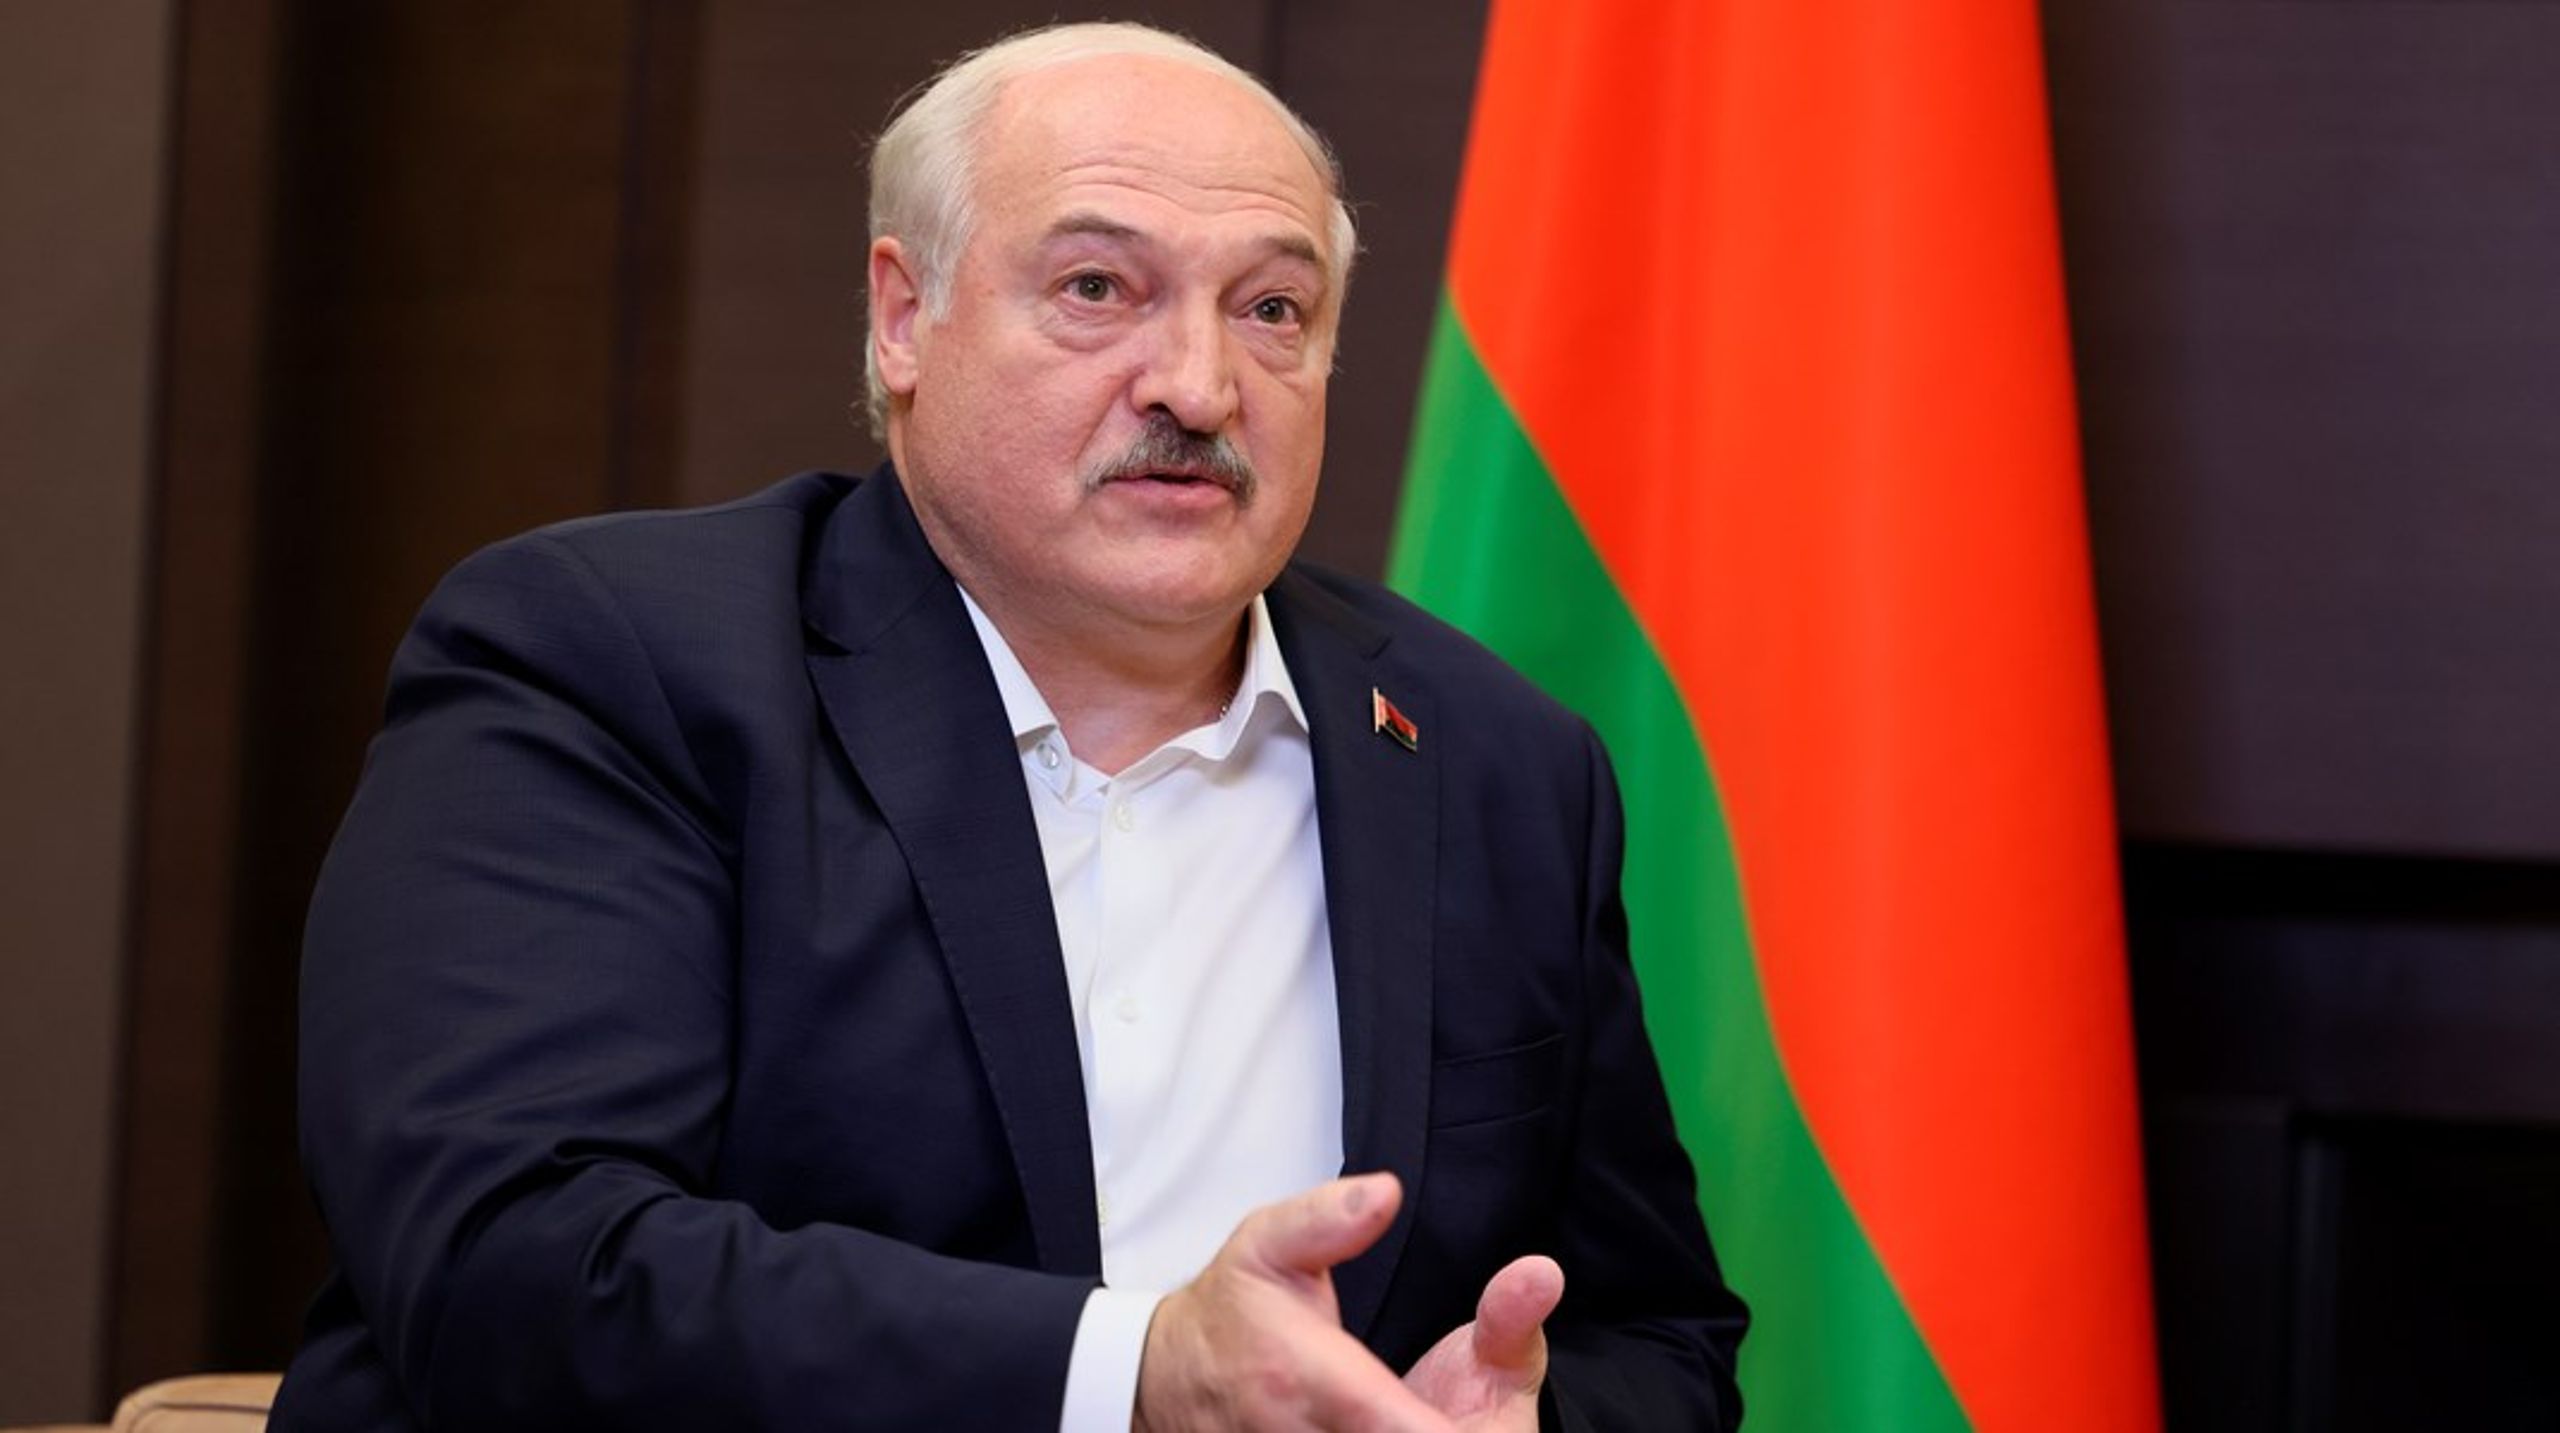 Sedan Ryssland, med Lukasjenkos stöd, inledde sitt fullskaliga krig mot Ukraina har repressionen i Belarus nått nya nivåer, skriver debattörerna.